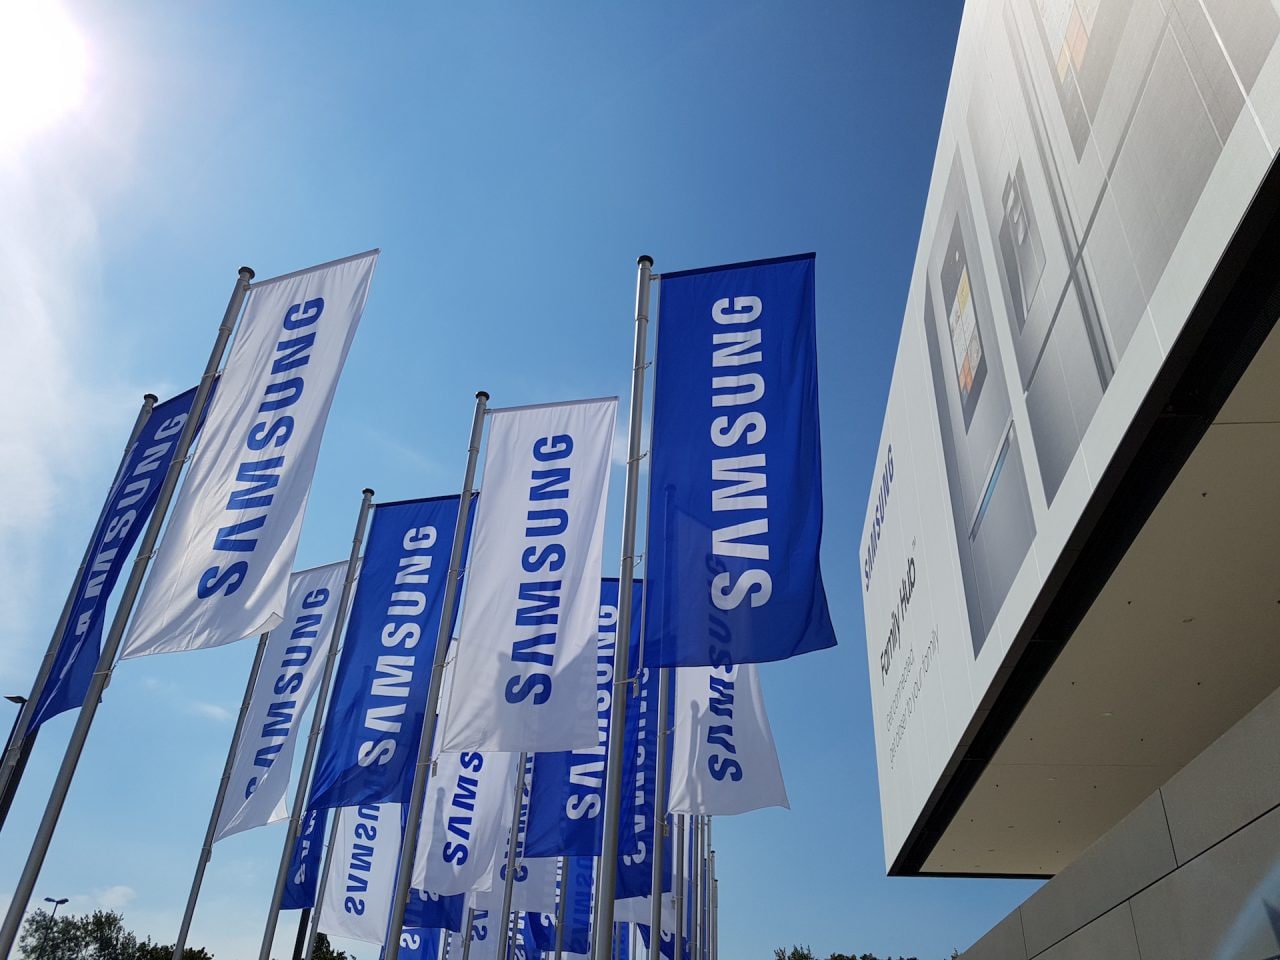 In attesa degli smartphone flessibili, Samsung pensa anche ai display estendibili (foto)